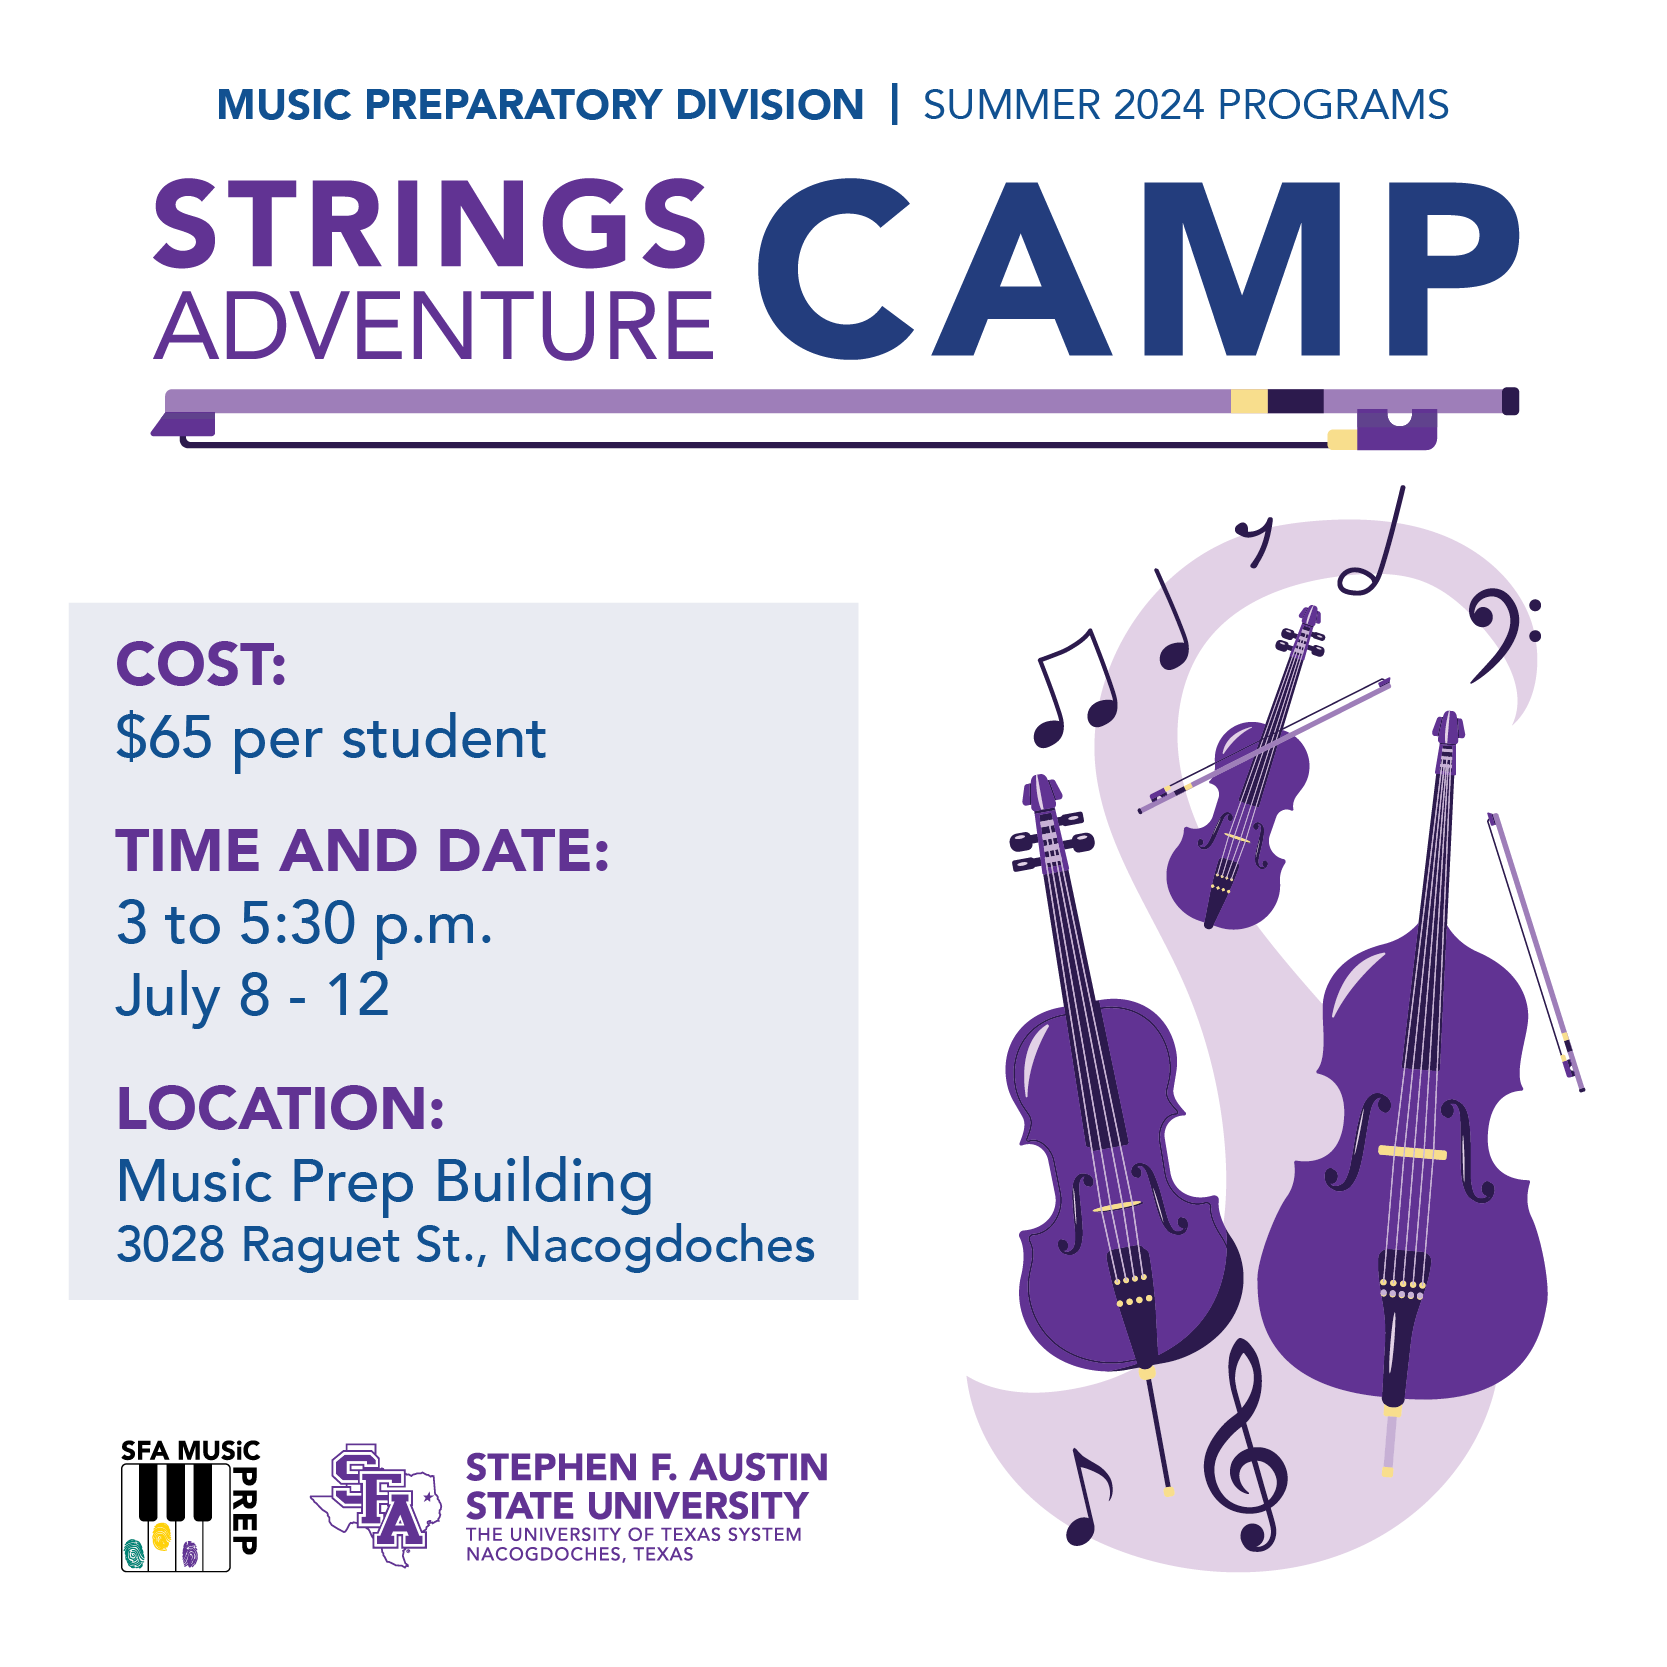 Strings Adventure Camp